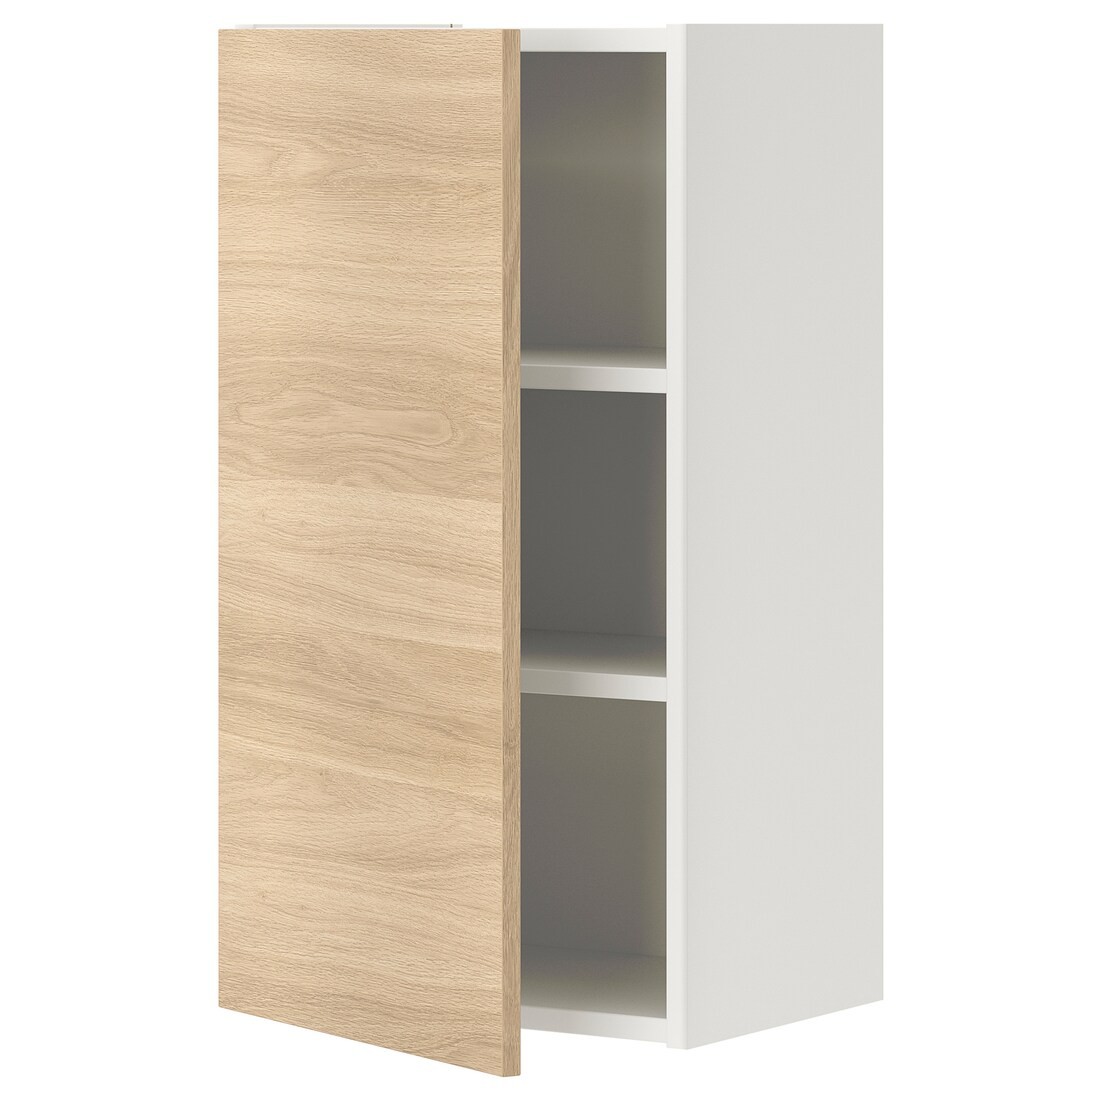 IKEA ENHET ЭНХЕТ Навесной шкаф с 2 полками / дверцами, белый / имитация дуба, 40x32x75 см 79320999 793.209.99